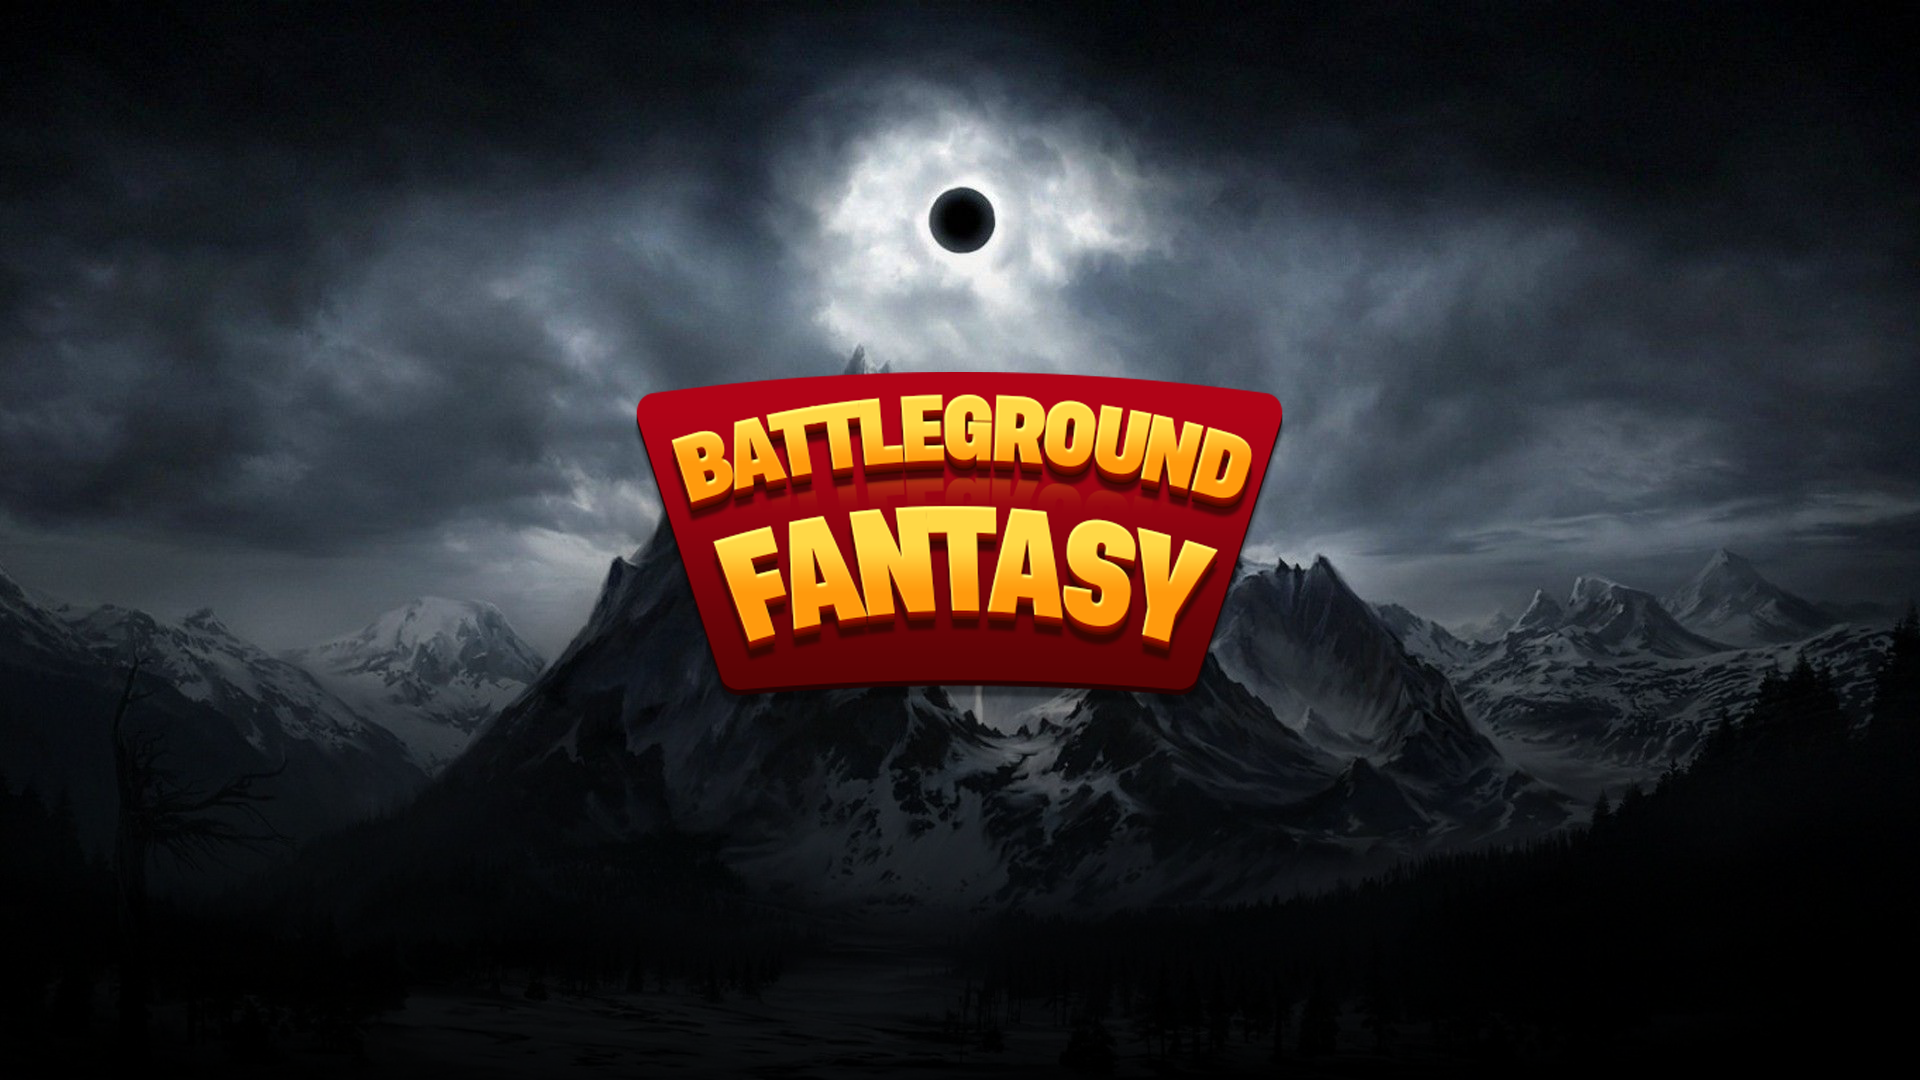 Battleground Fantasy